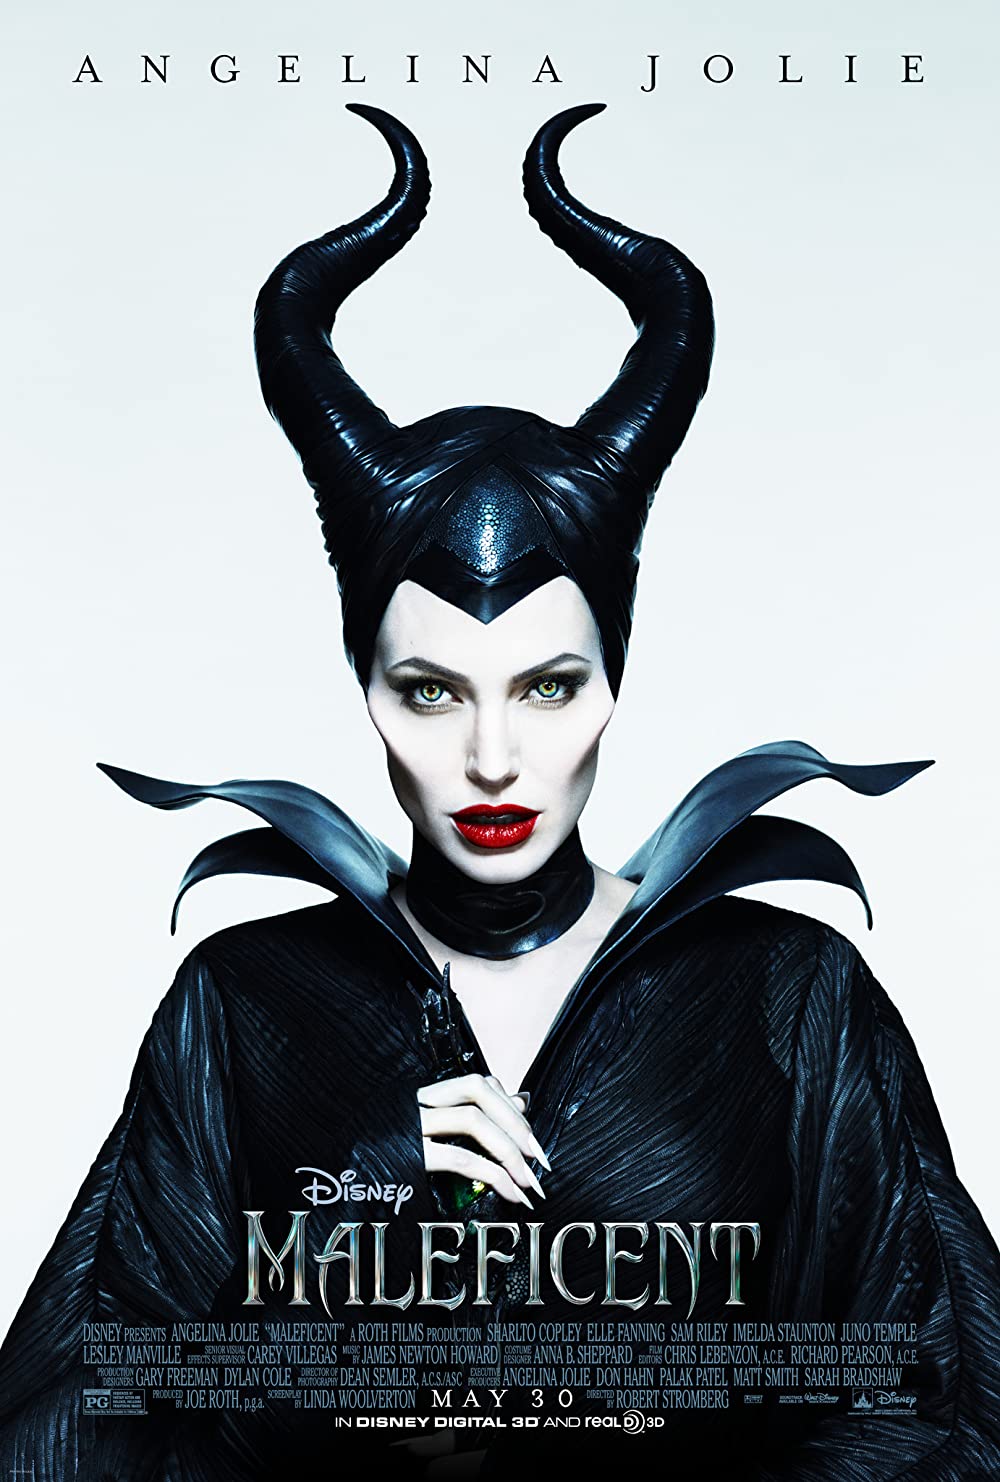 ดูหนังออนไลน์ฟรี Maleficent มาเลฟิเซนต์ กำเนิดนางฟ้าปีศาจ